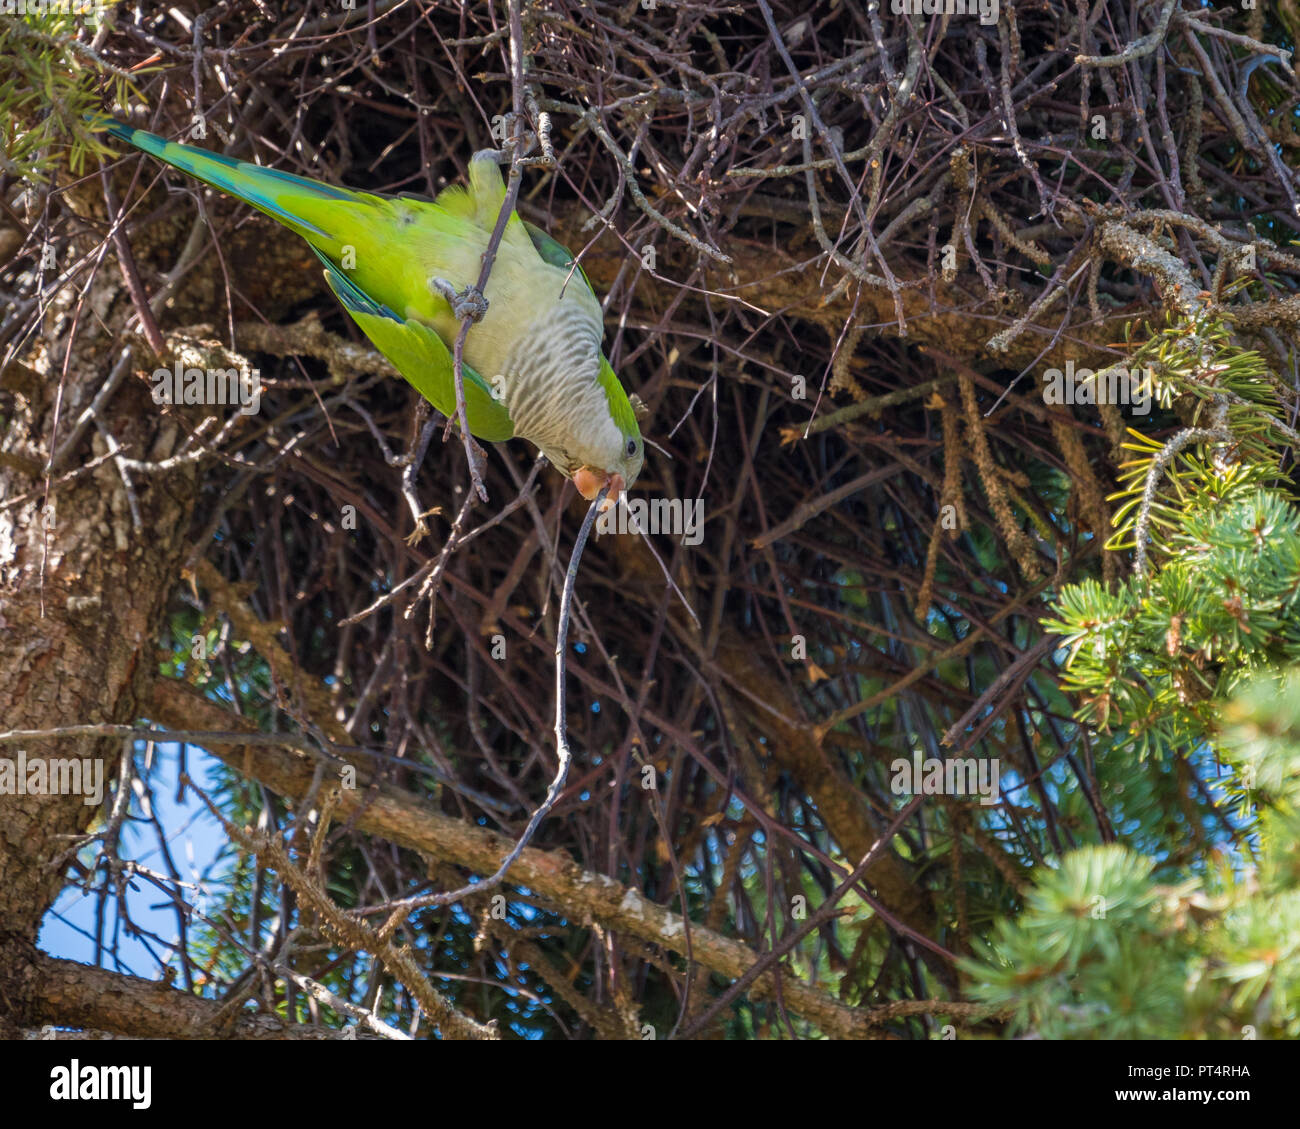 Le perroquet vert construit un nid dans un arbre de pin avec un bâton dans son bec, dans le Connecticut États-Unis Banque D'Images